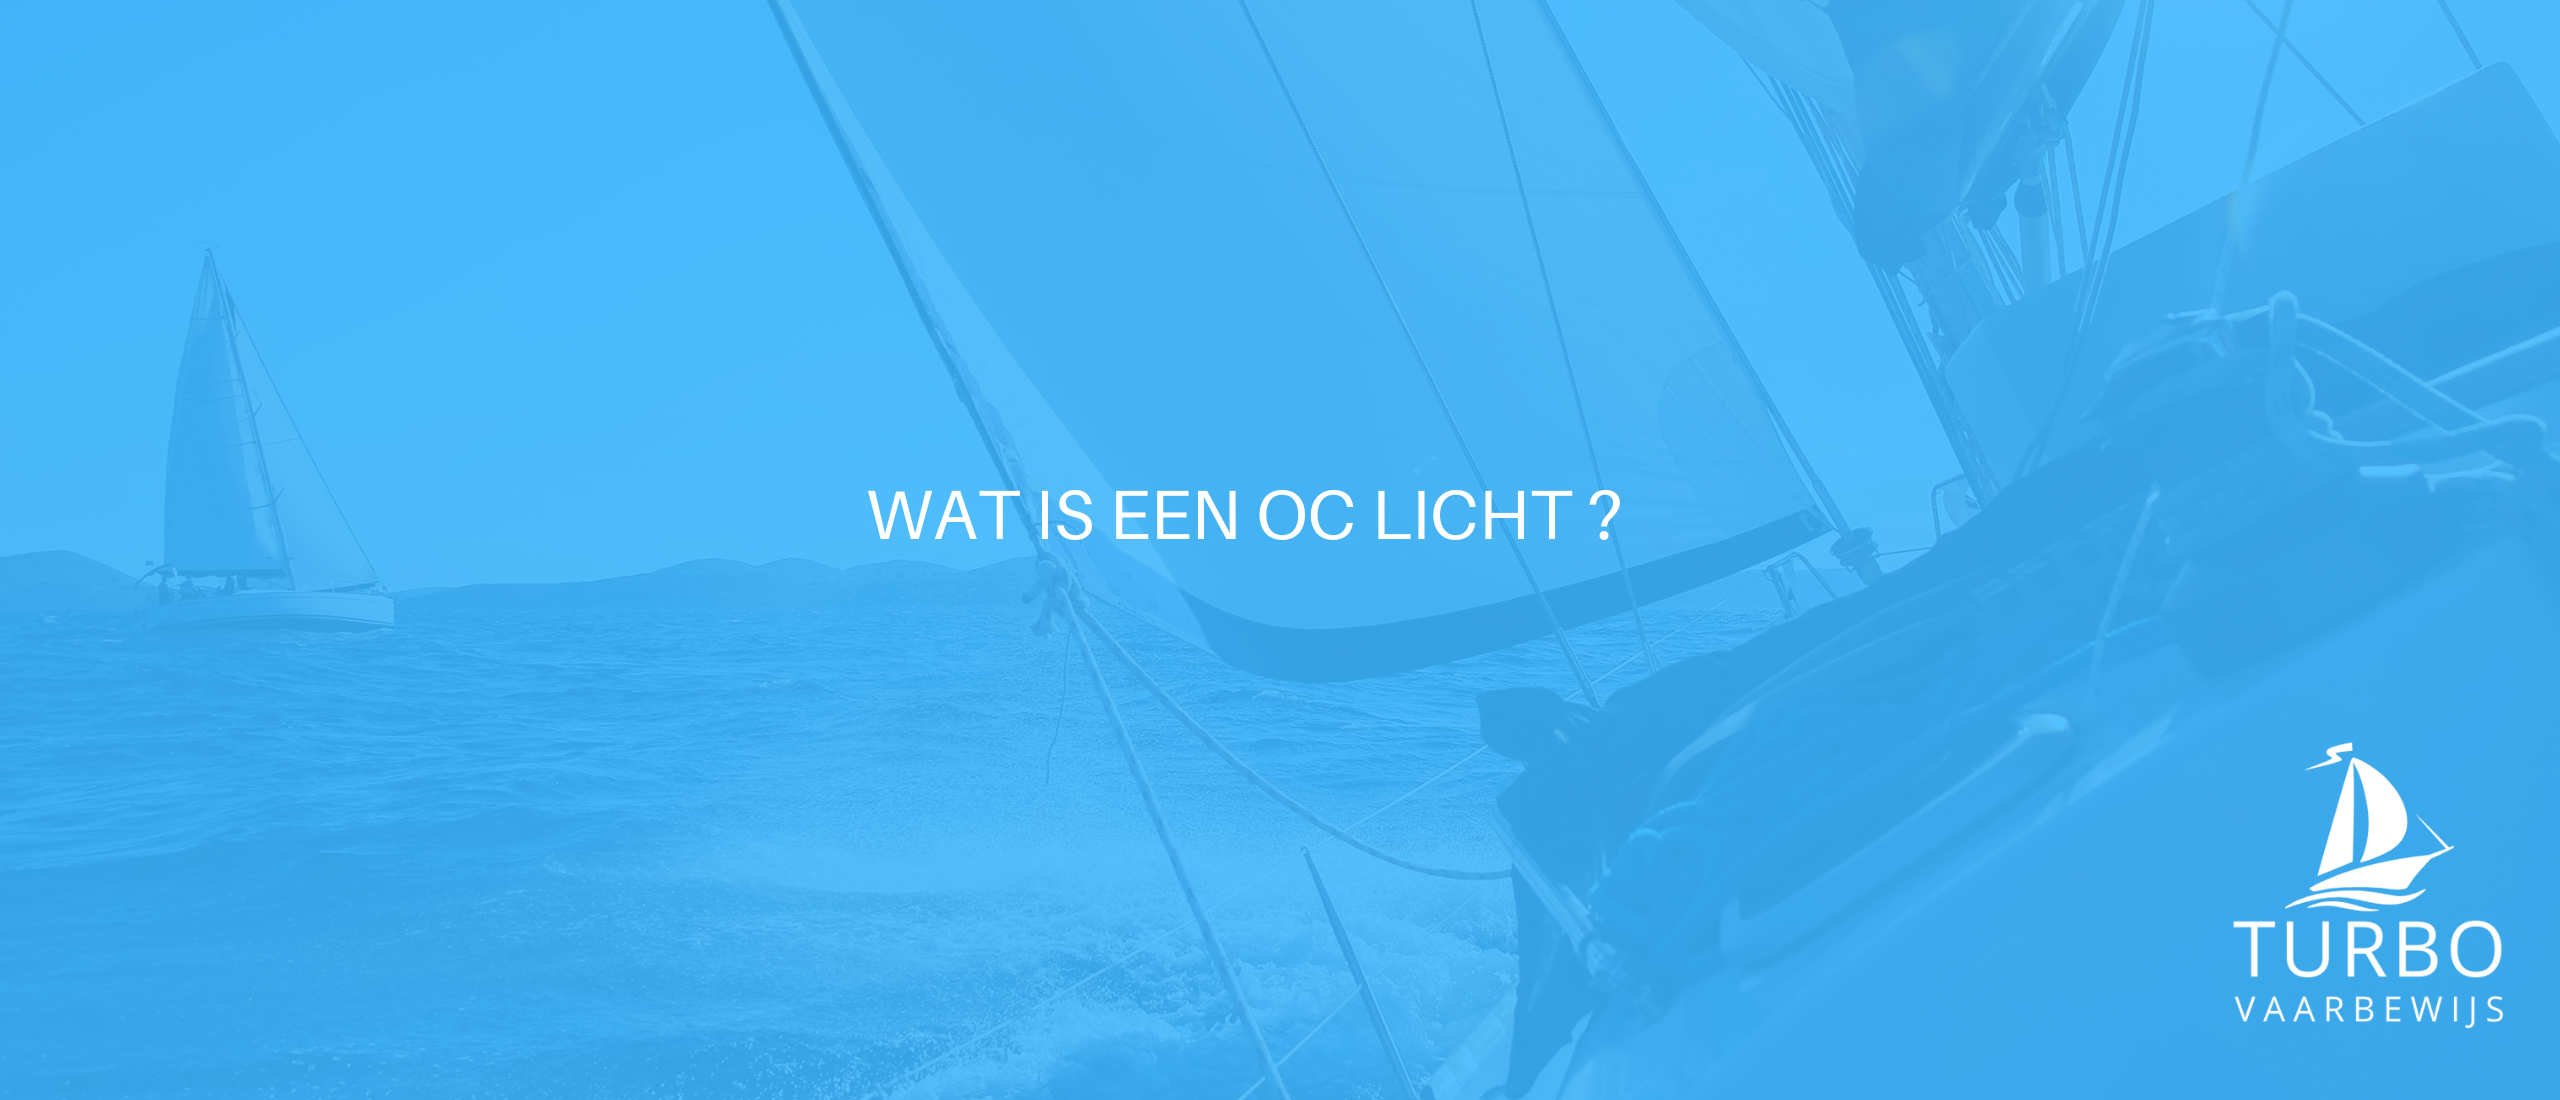 Wat is een oc licht?